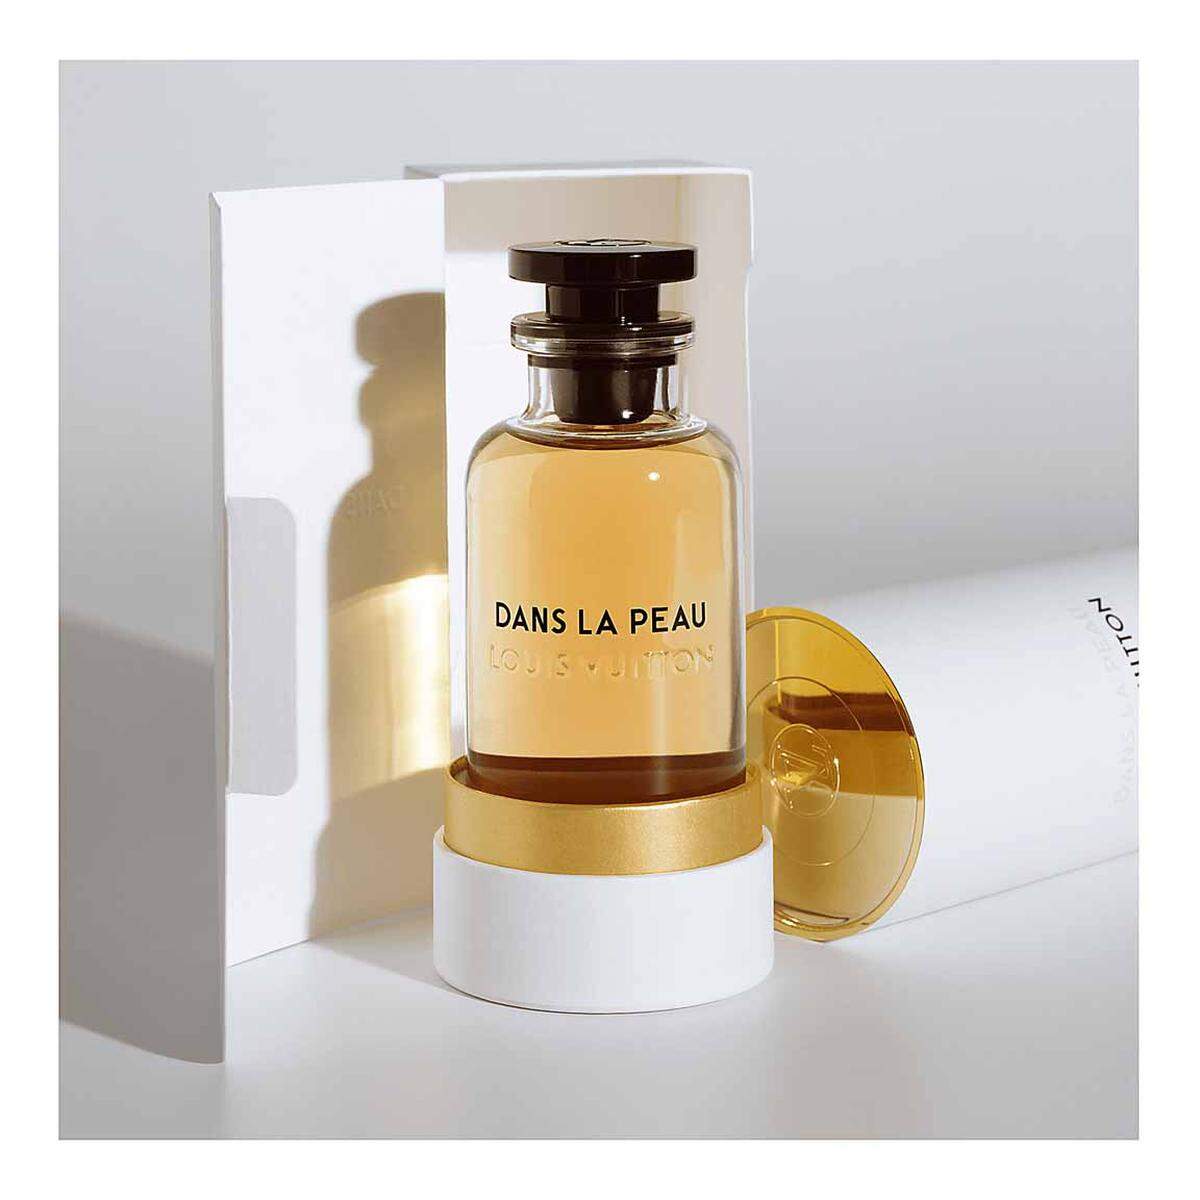 Für Furore sorgt die neue Parfumkollektion von Louis Vuitton. Der Hausparfumeur heißt Jacques Cavallier Belletrud, es gibt sieben Düfte, die nur in den Boutiquen der Marke erhältlich sind. "Dans la peau" ist der Lederduft aus der Kollektion, 100 ml Eau de Parfum um 200 Euro.